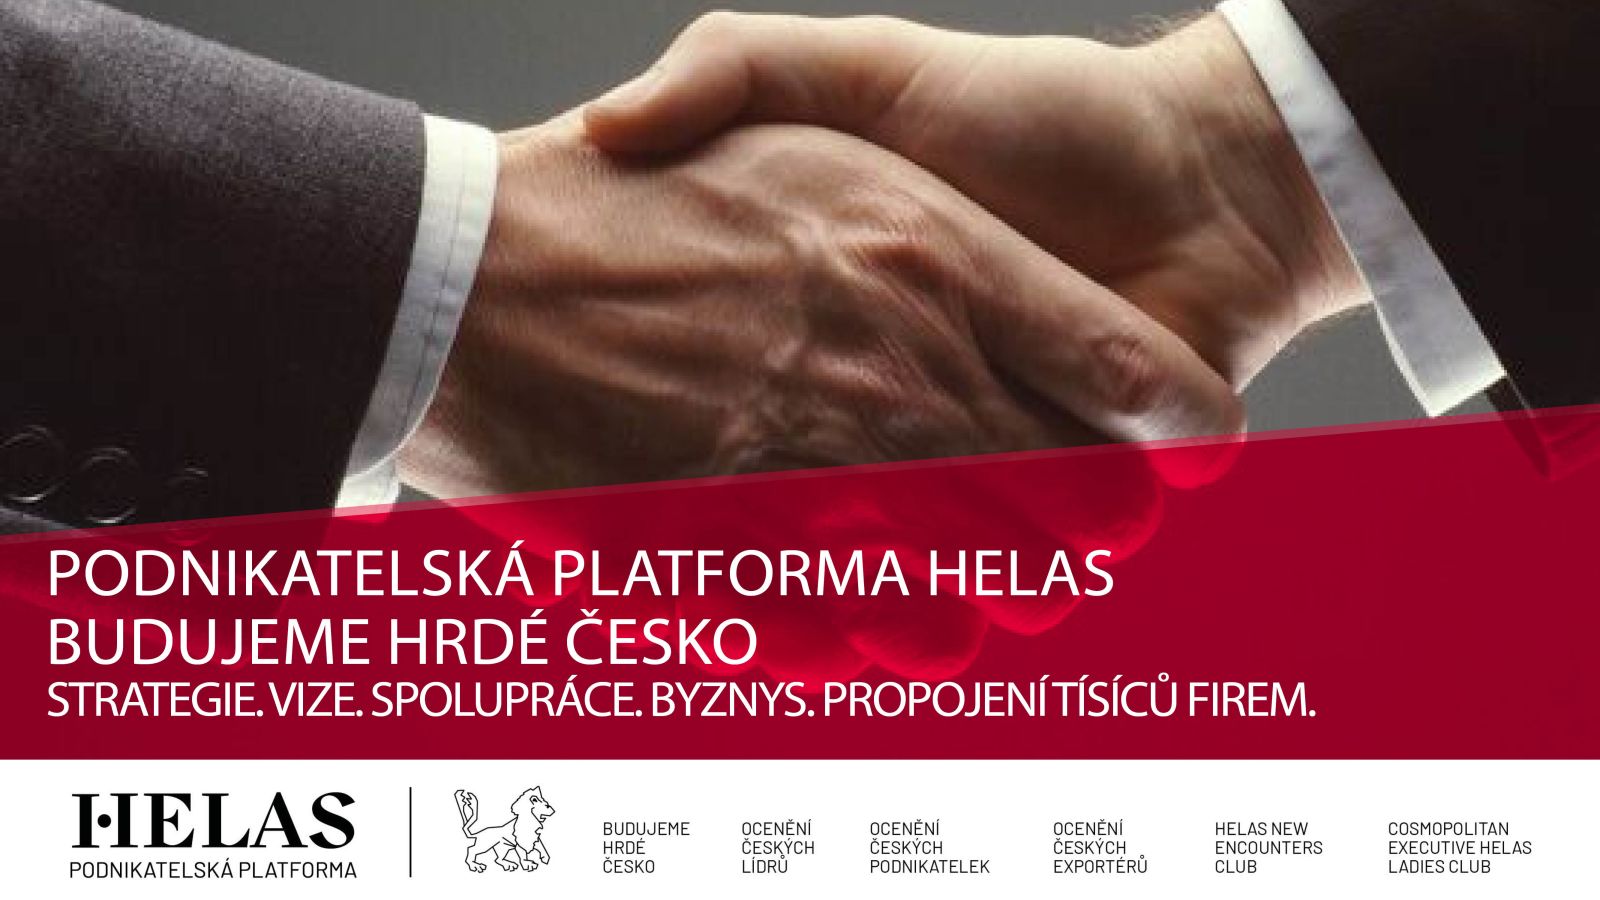 Podnikatelská platforma Helas – BUDUJEME HRDÉ ČESKO se rozrůstá